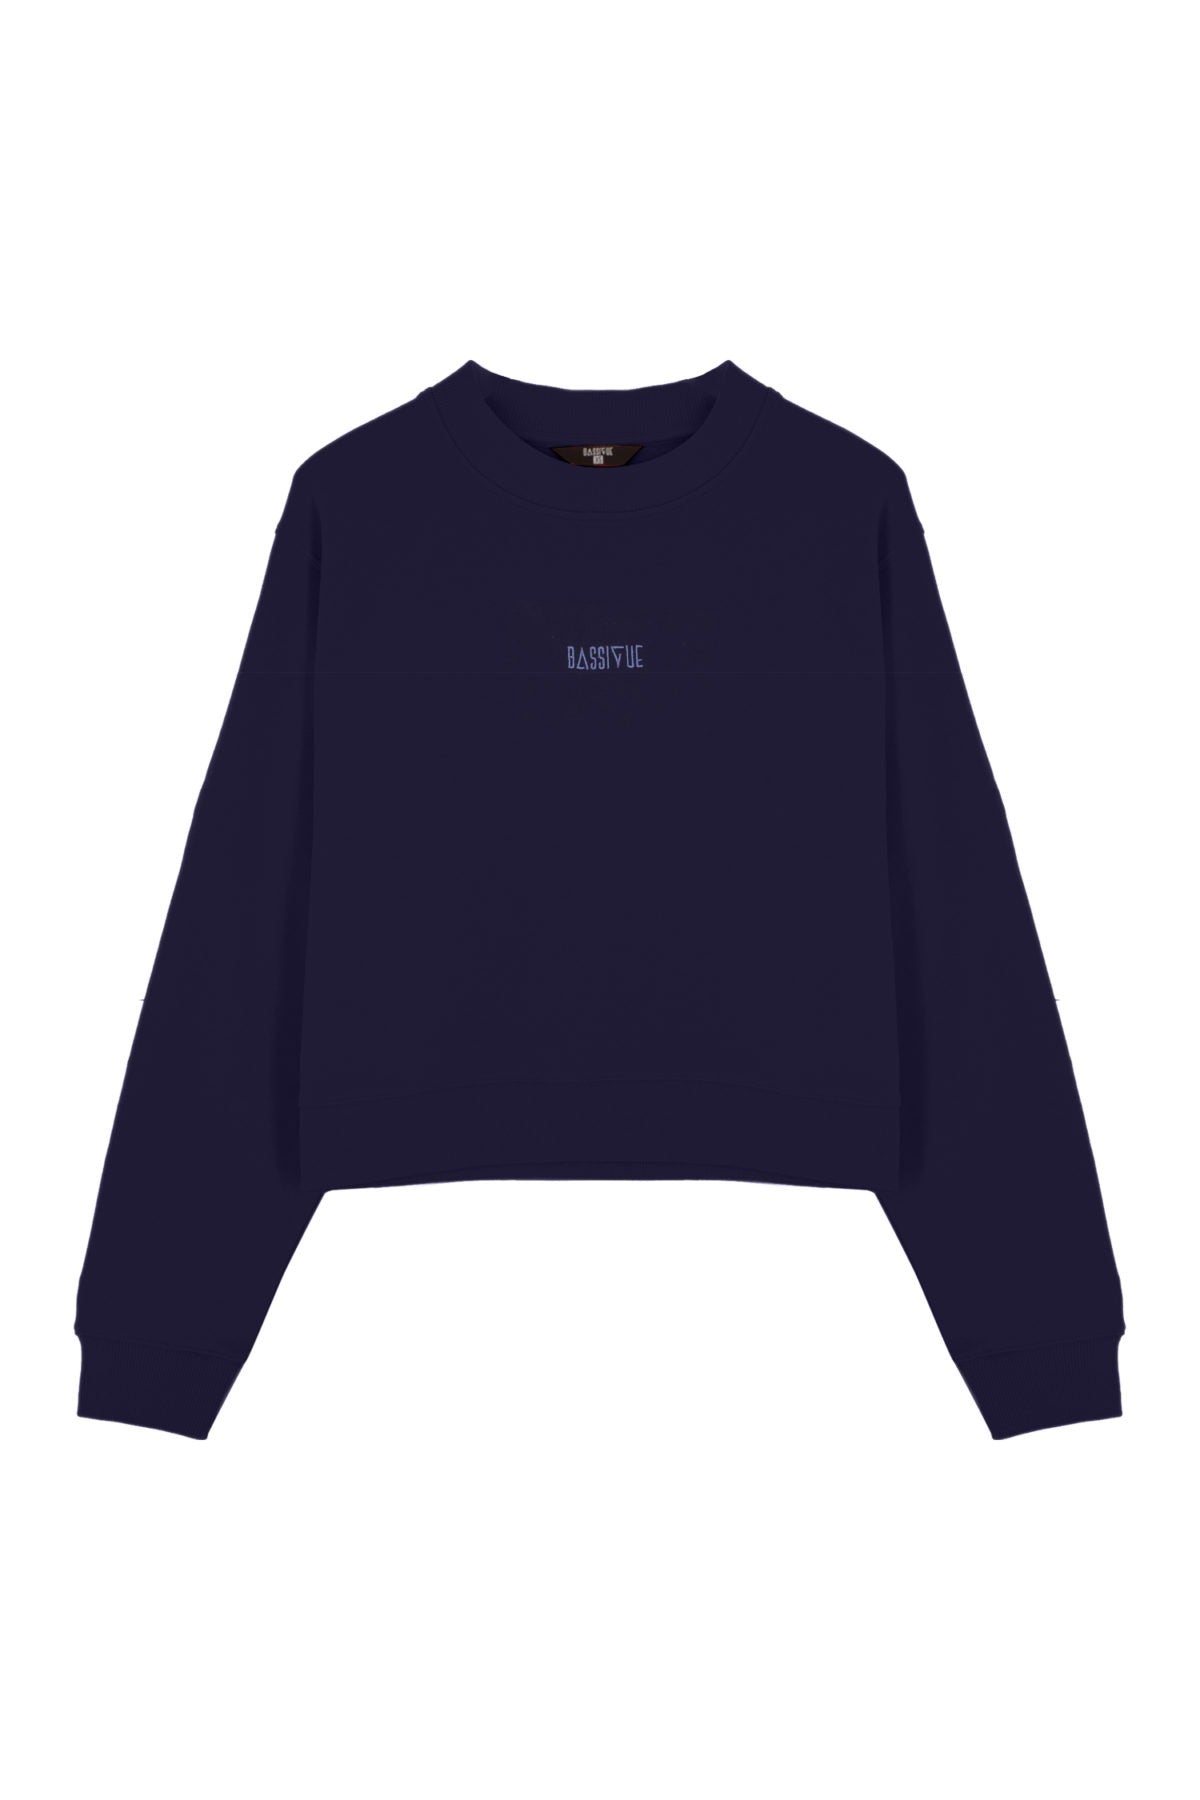 Cotton Crewneck Sweatshirt - Dark Navy